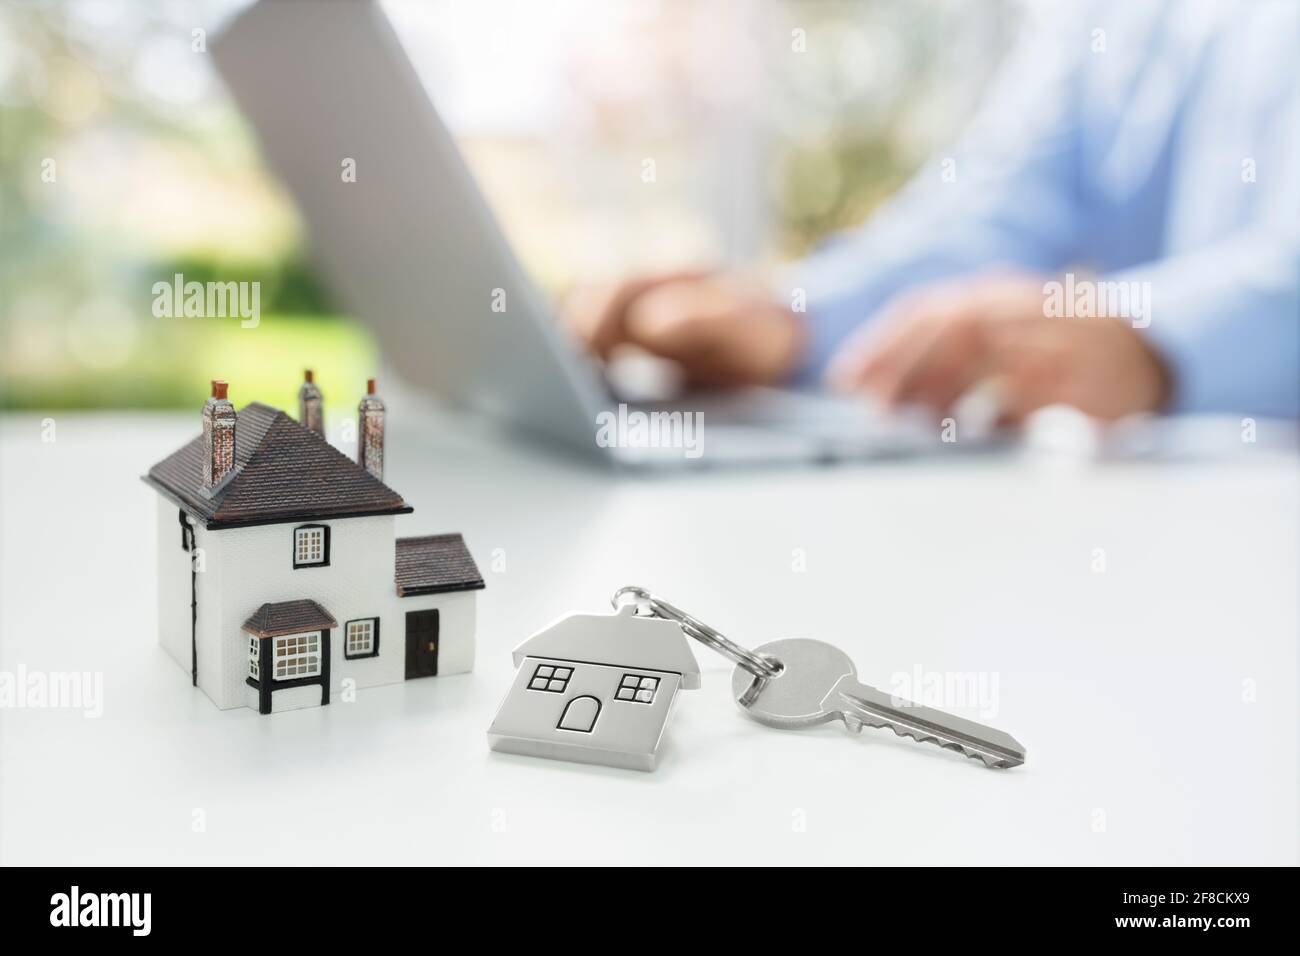 Recherche de l'Internet pour l'immobilier ou nouvelle maison avec modèle maison et clé Banque D'Images